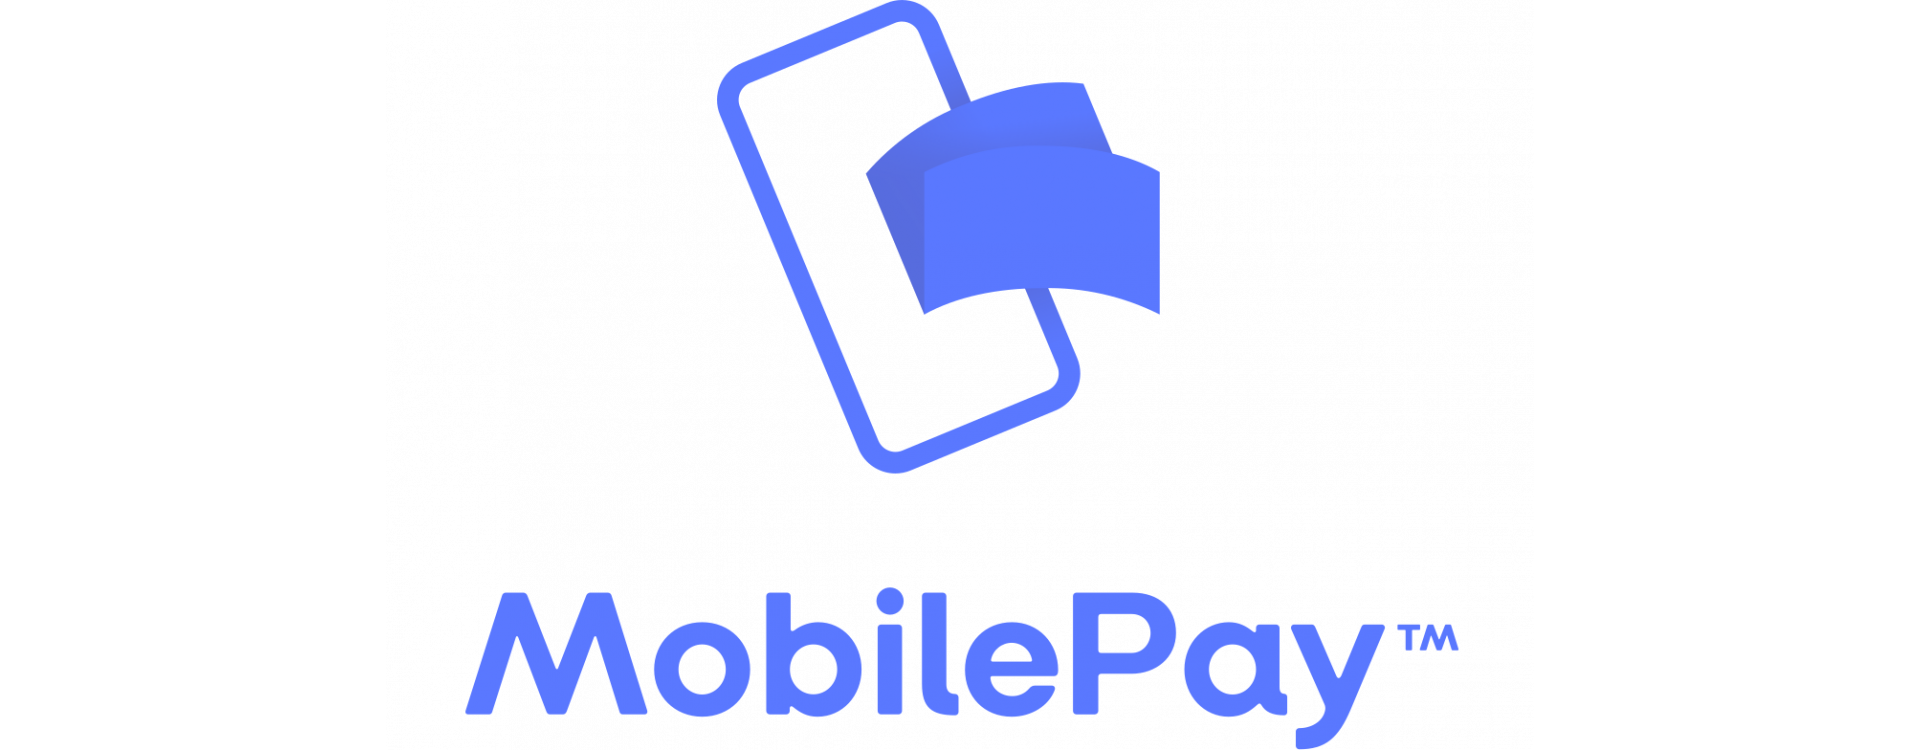 Теперь вы можете оплатить заказ с помощью MobilePay